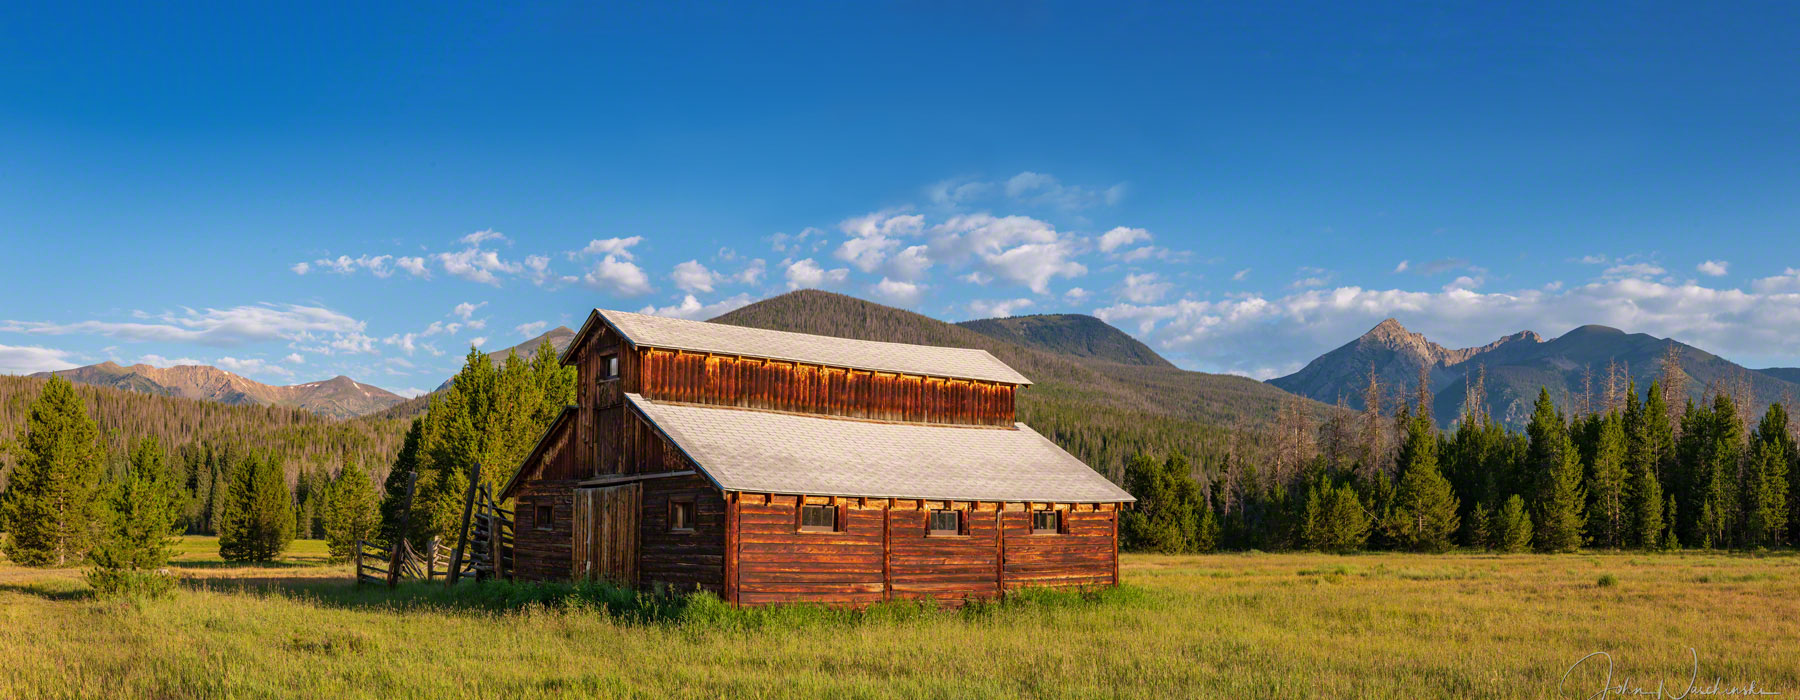 Little Buckaroo Barn Rocky Mountain National Park Colorado